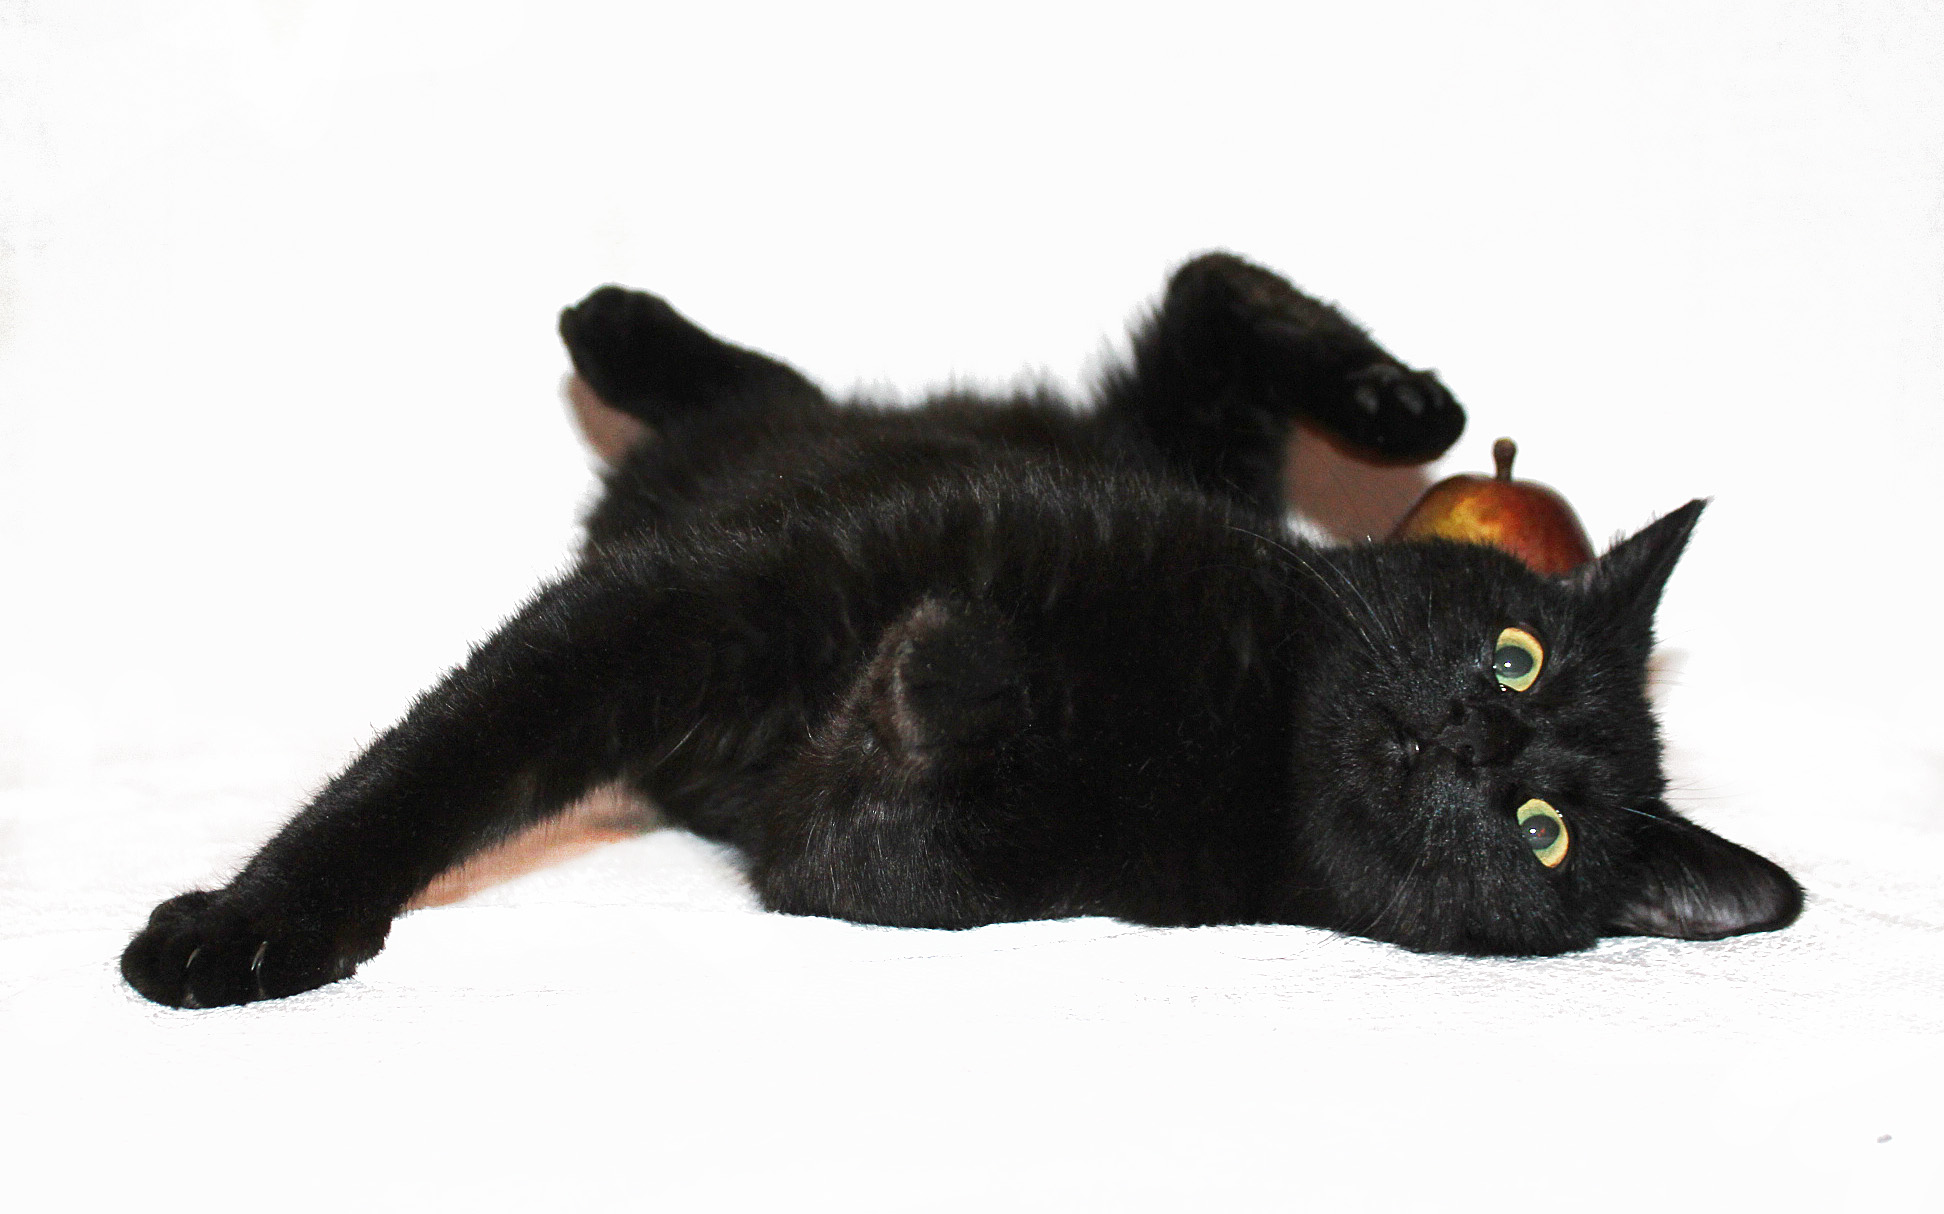 Черный кот лежит